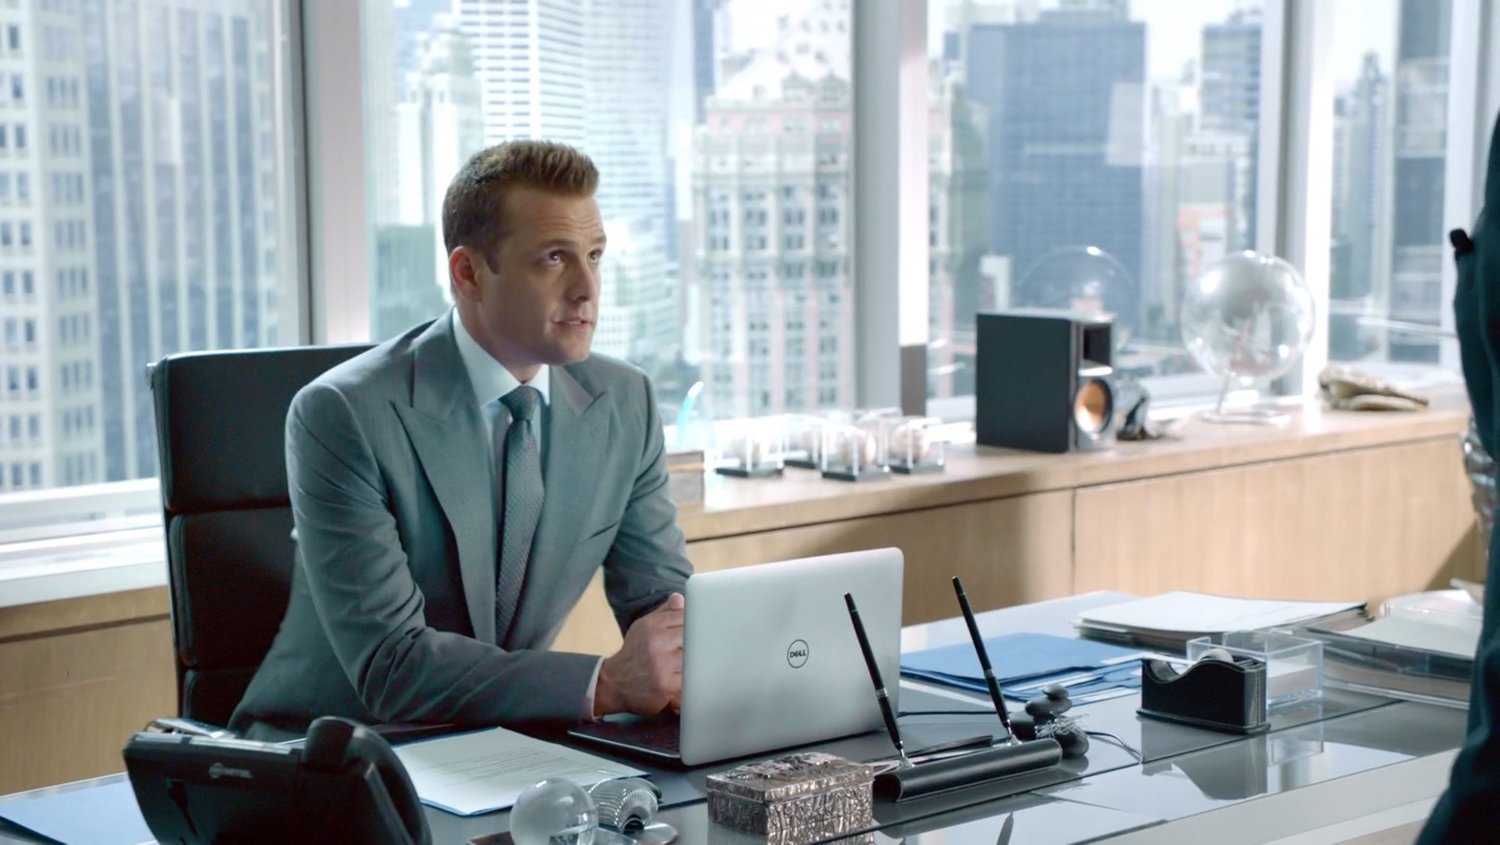 Suits - Harvey Specter's Office In CG - Deckor